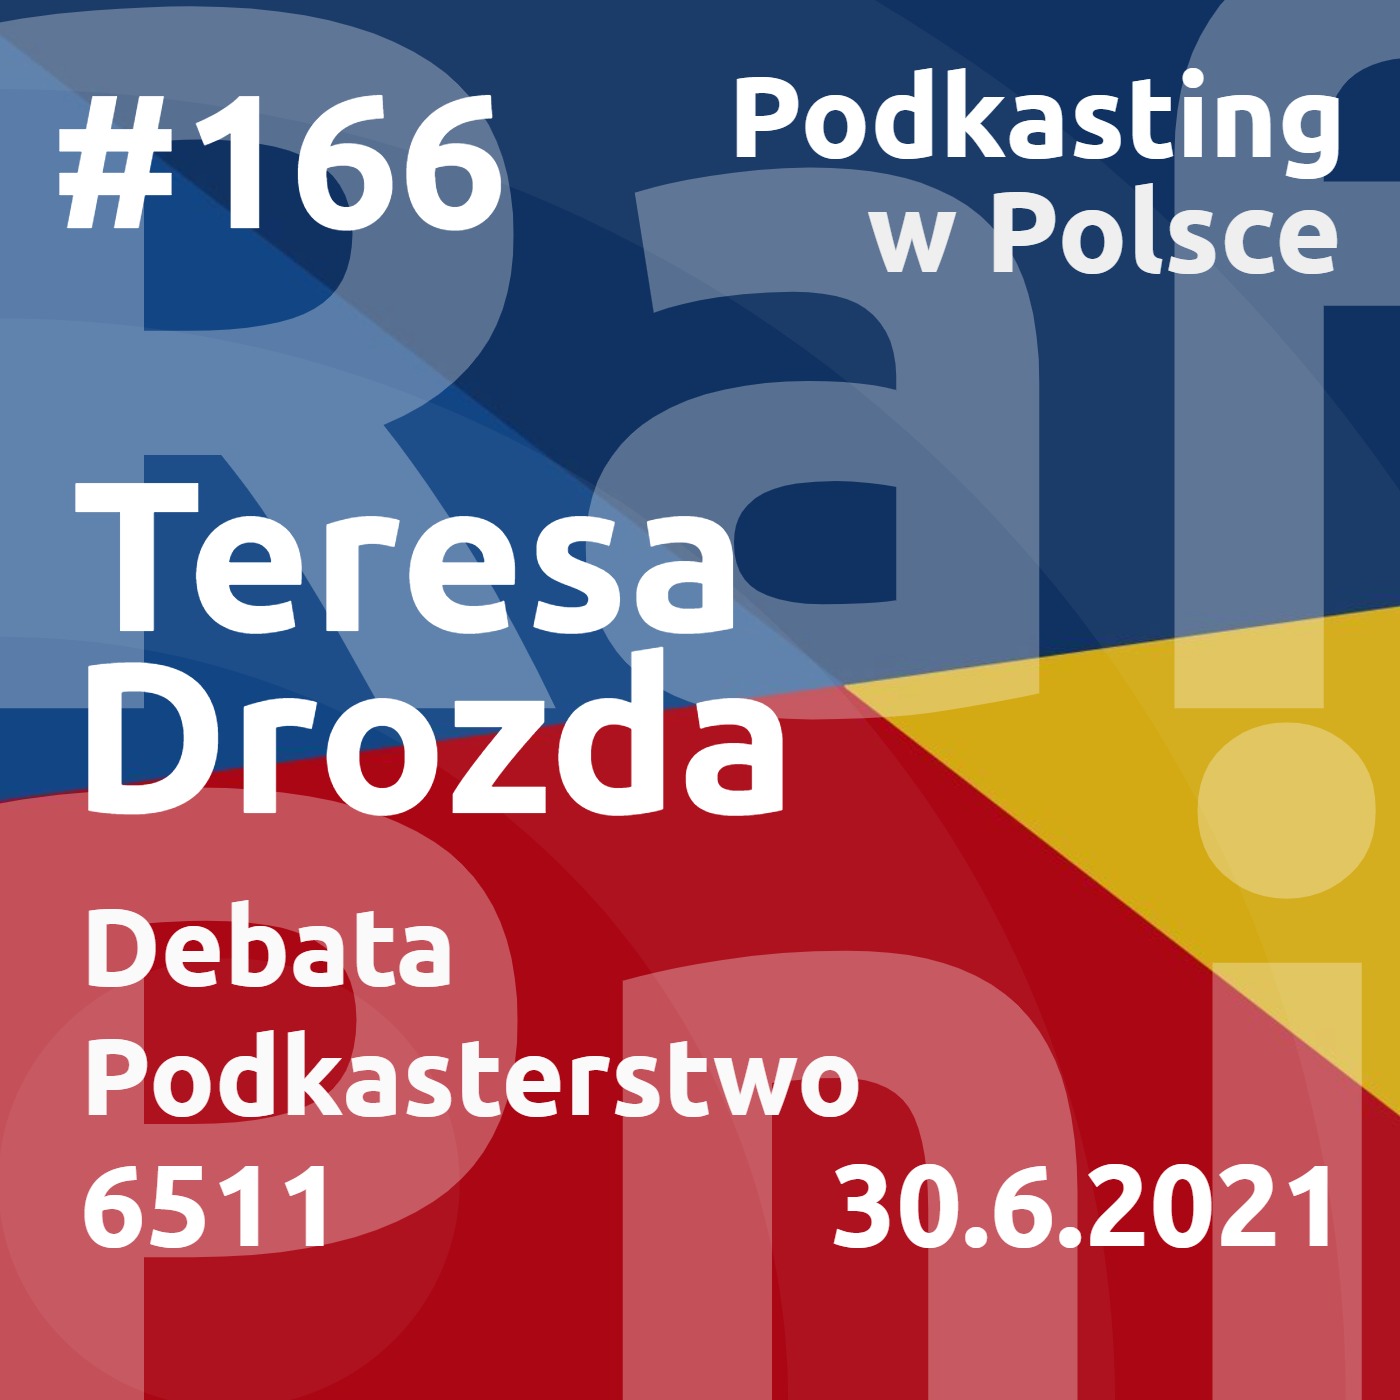 #166 - Teresa Drozda - Podkasterstwo. Debata